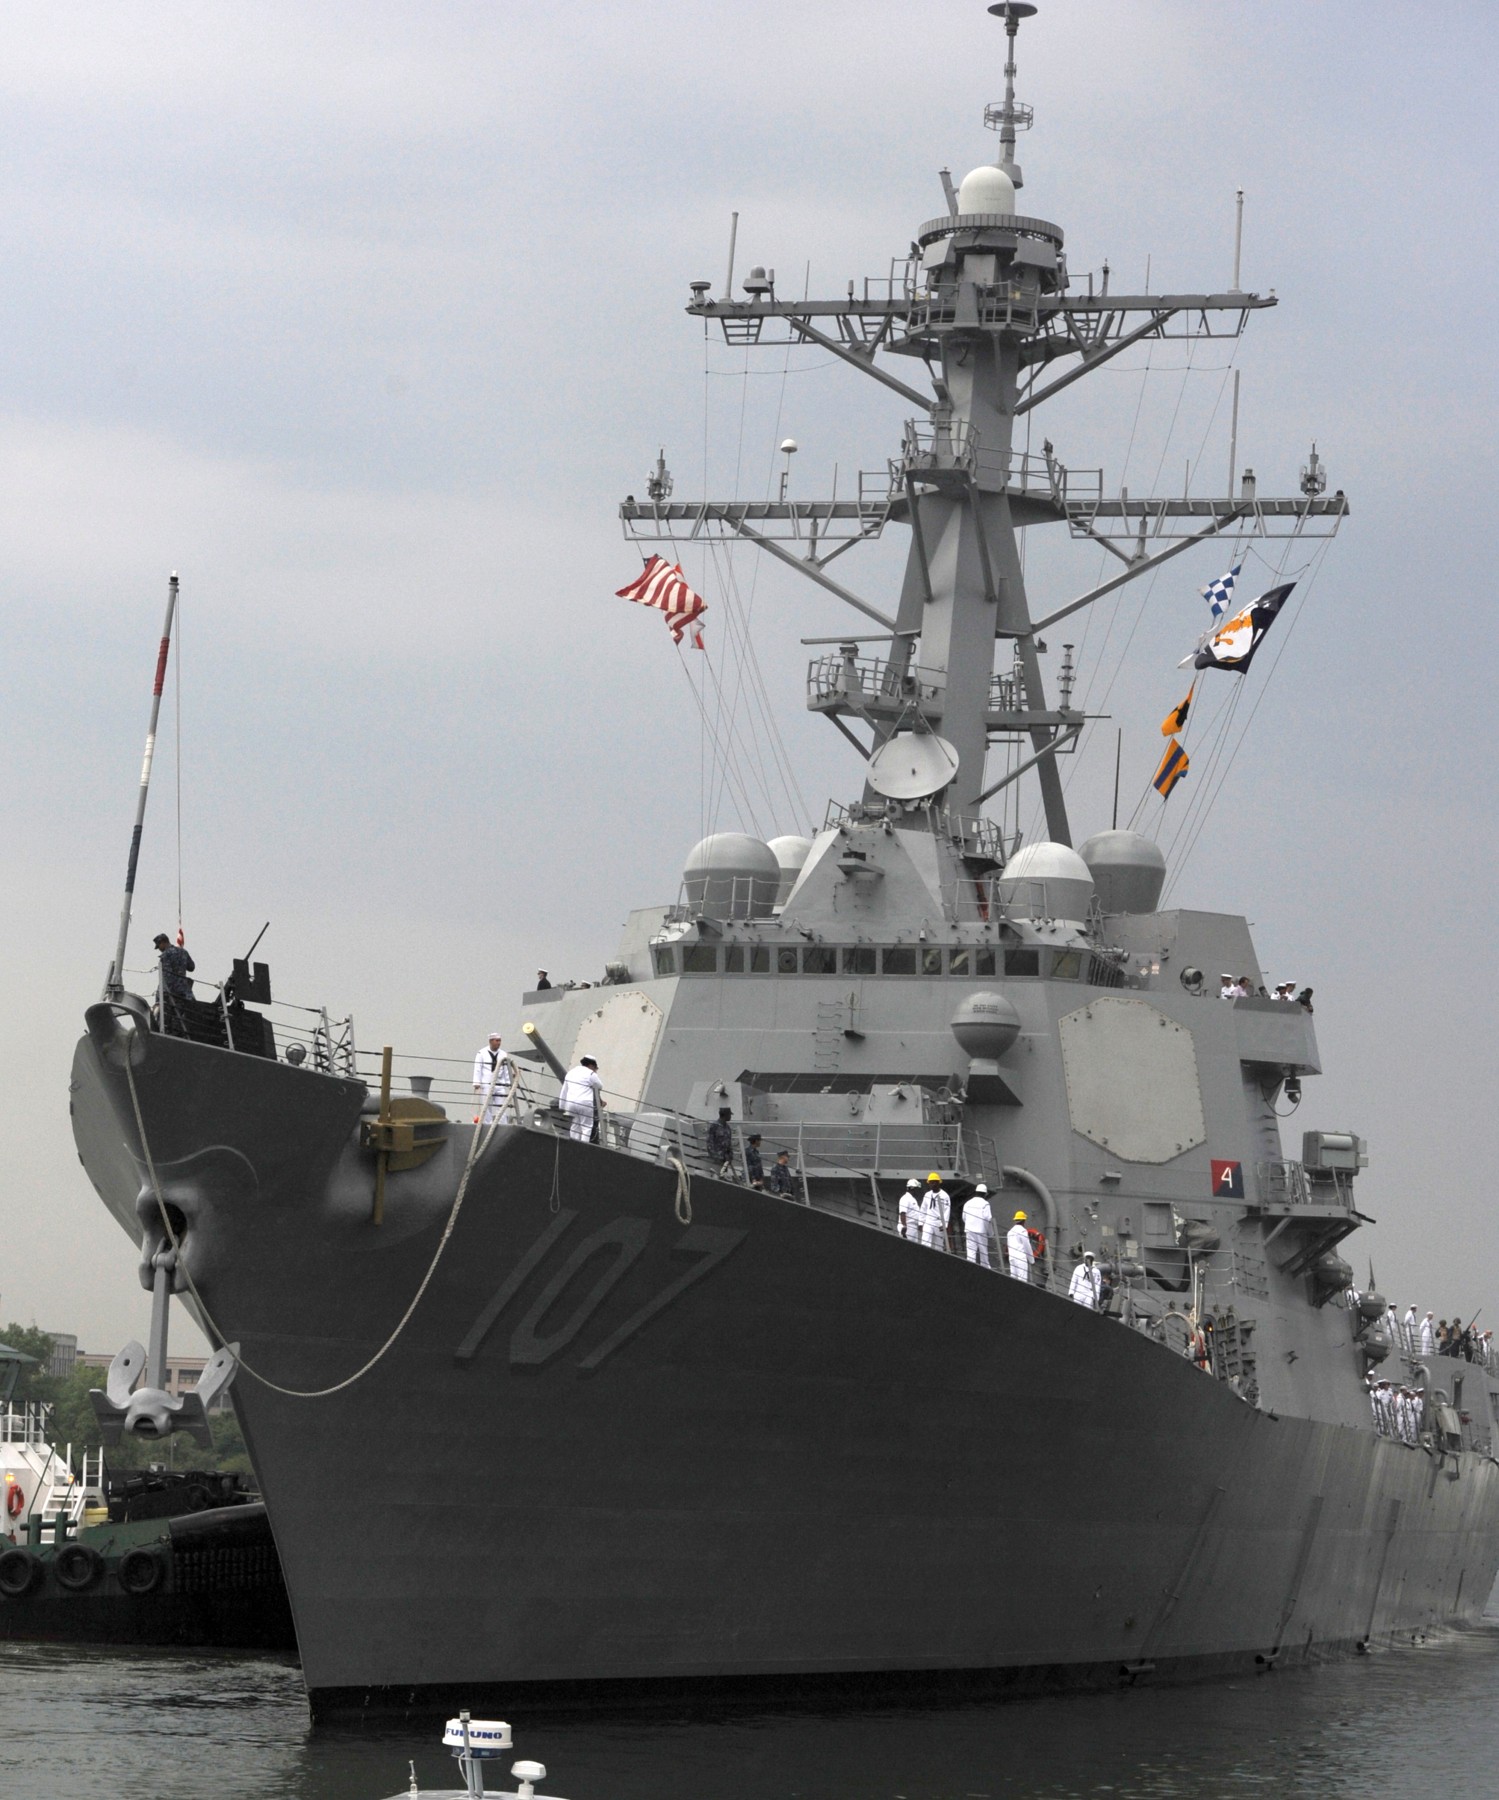 ddg-107 uss gravely arleigh burke class guided missile destroyer aegis us navy boston massachusetts 33p